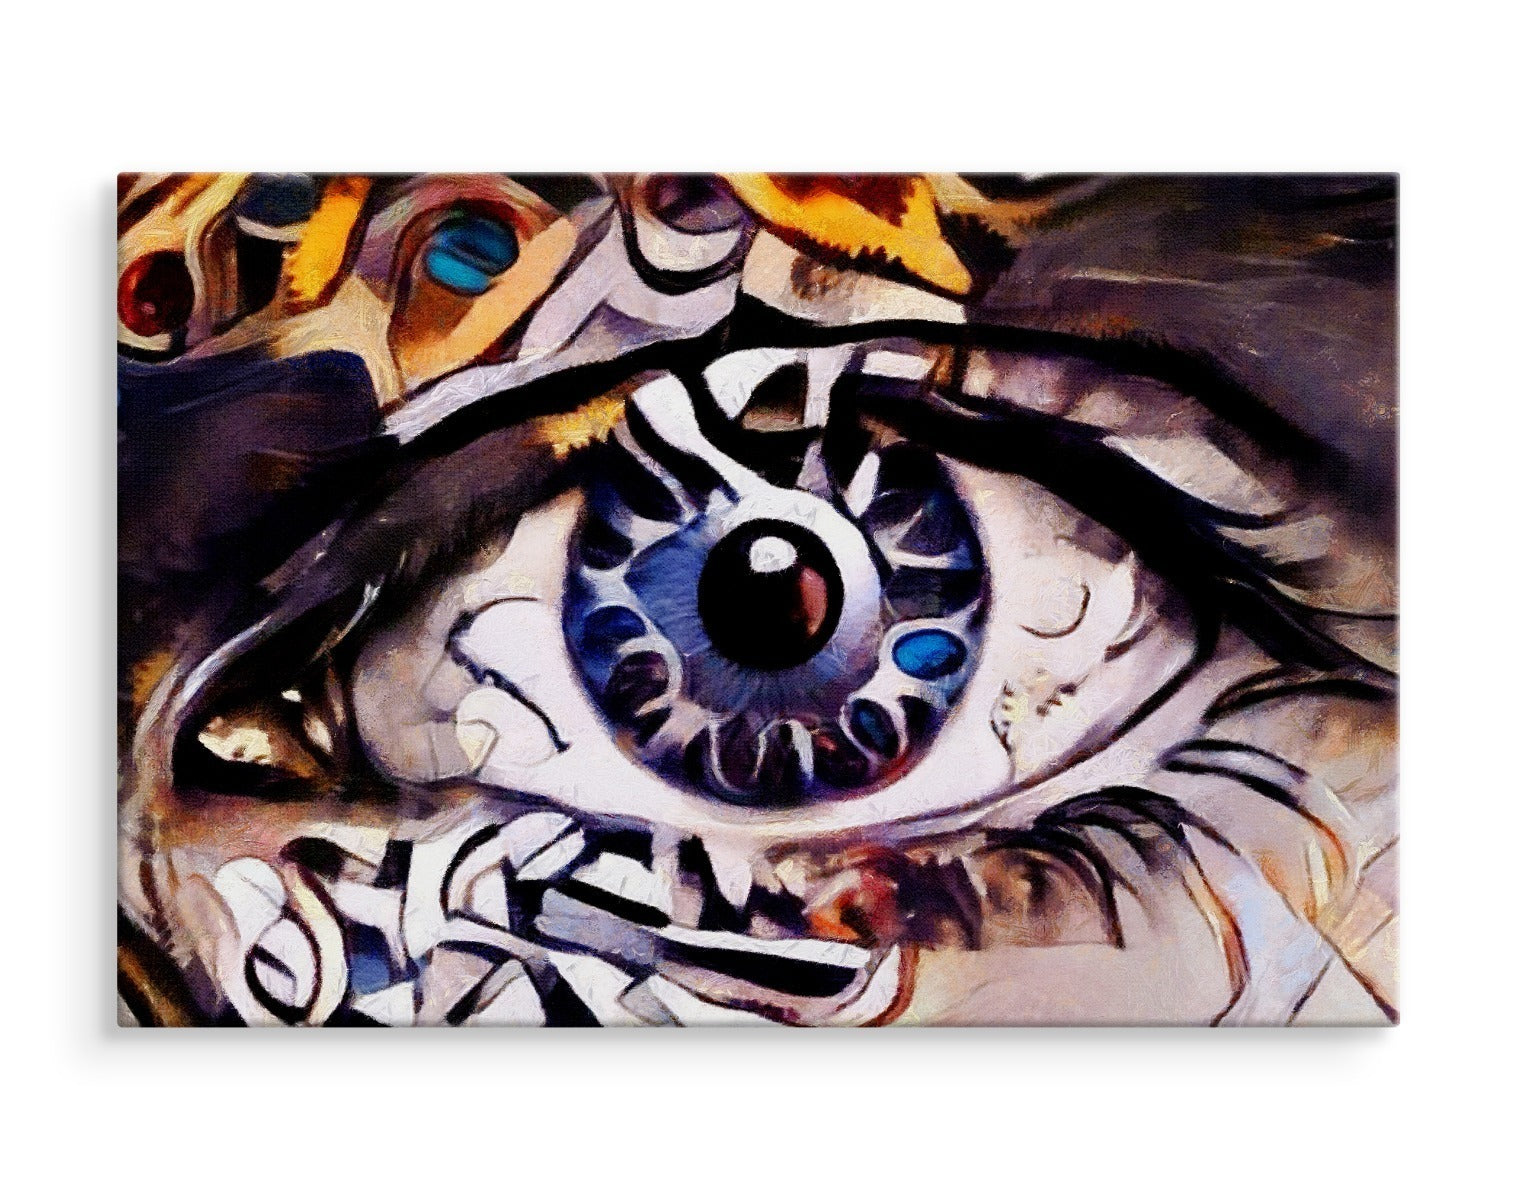 Et abstrakt maleri av øyet